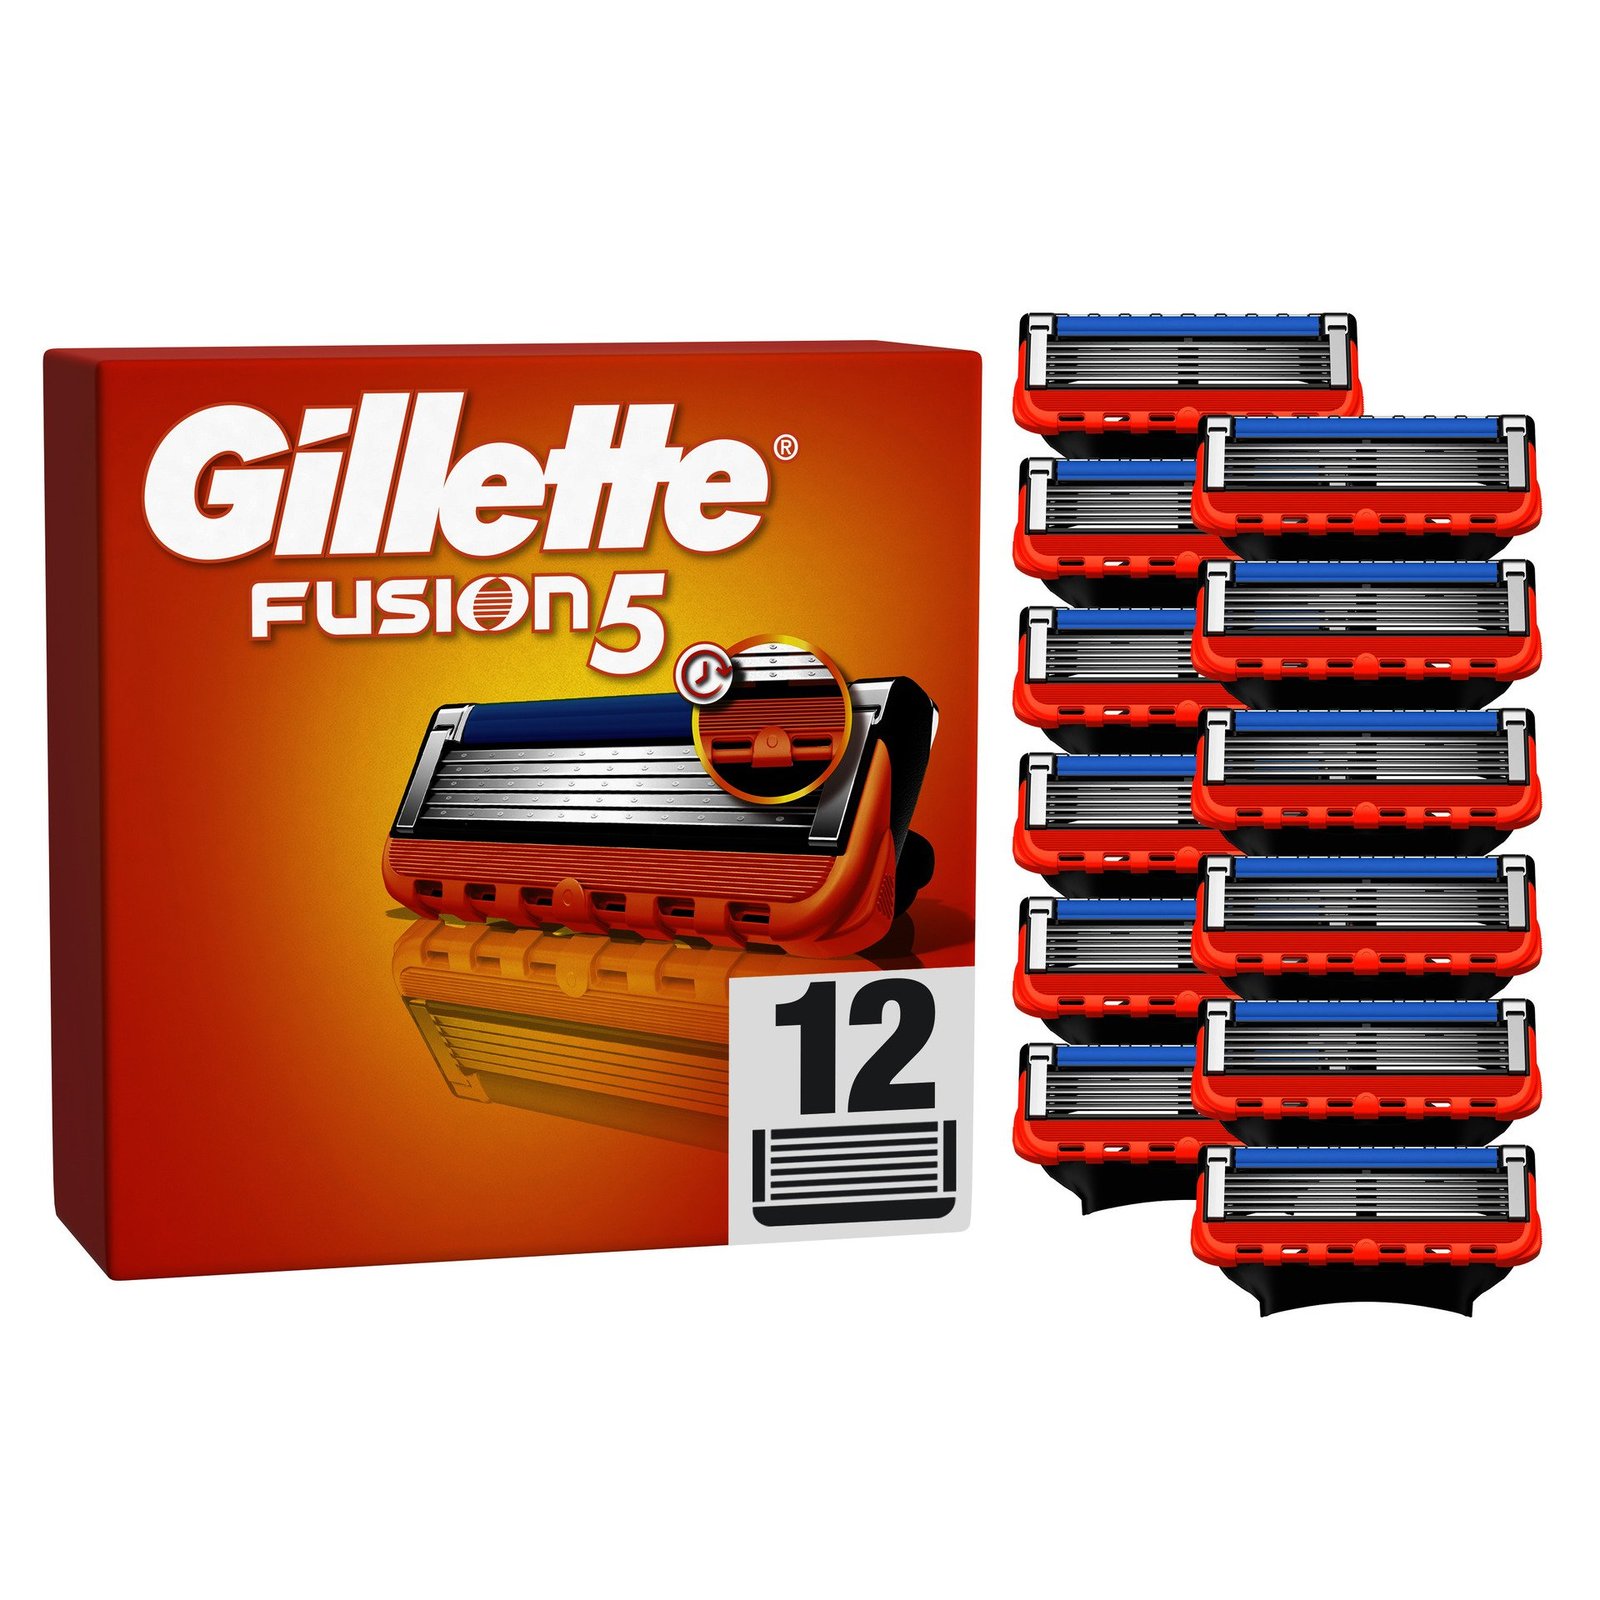 Gillette Fusion5 rakblad för män, 12 st